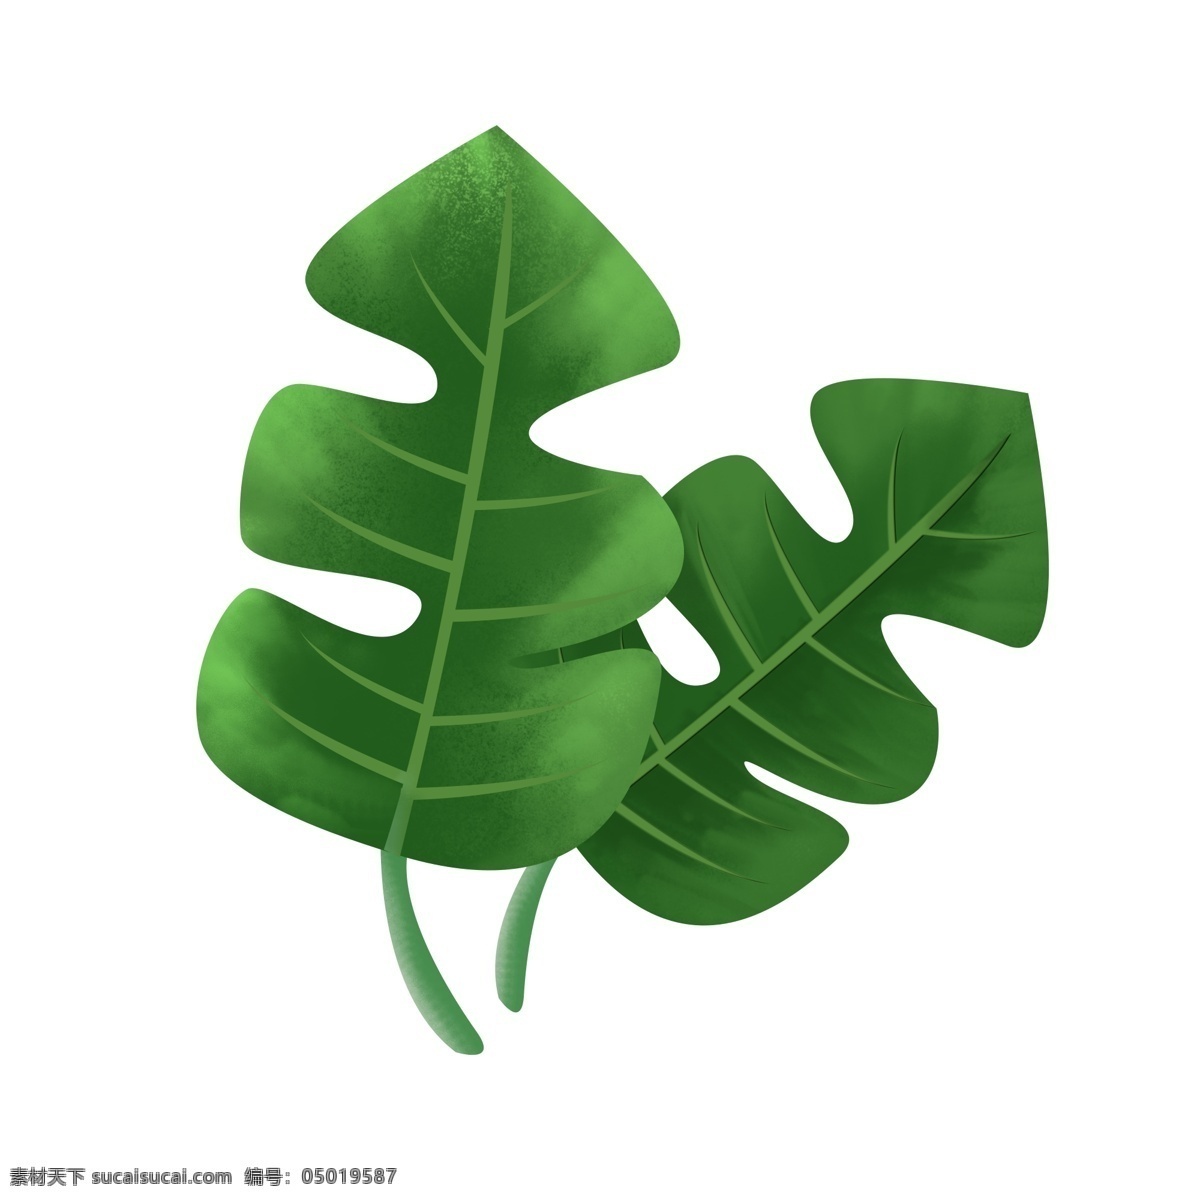 ps 手绘 绿叶 插画 元素 设计素材 绿色 叶子 可商用 热带 叶